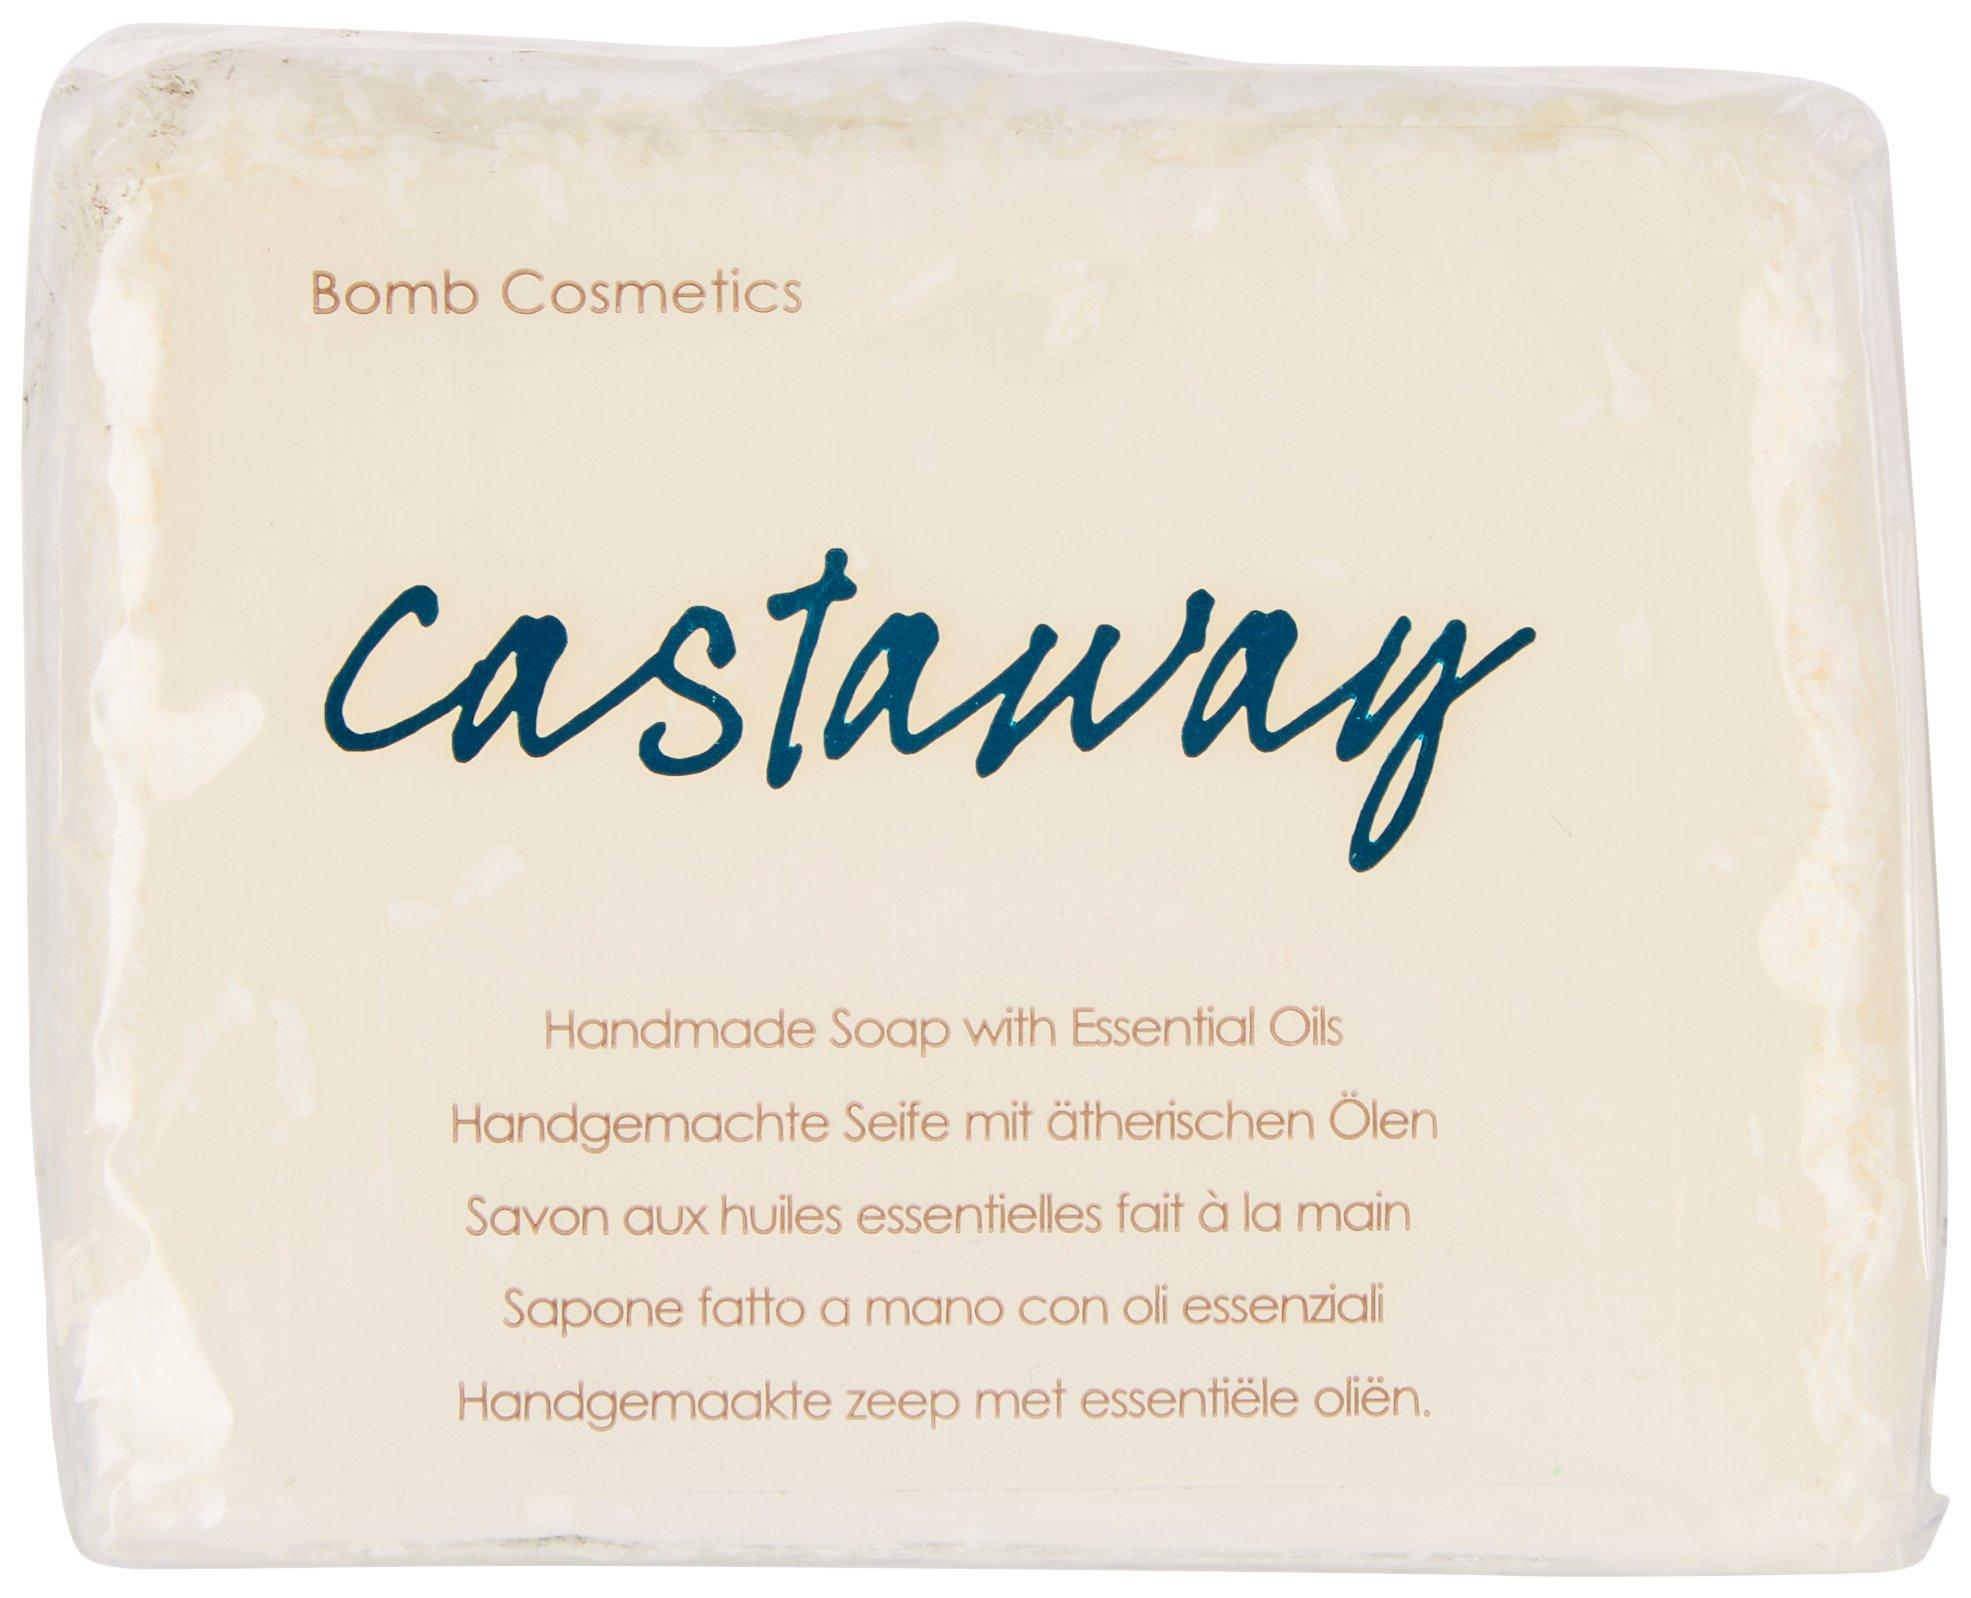 Castaway Handmade Soap